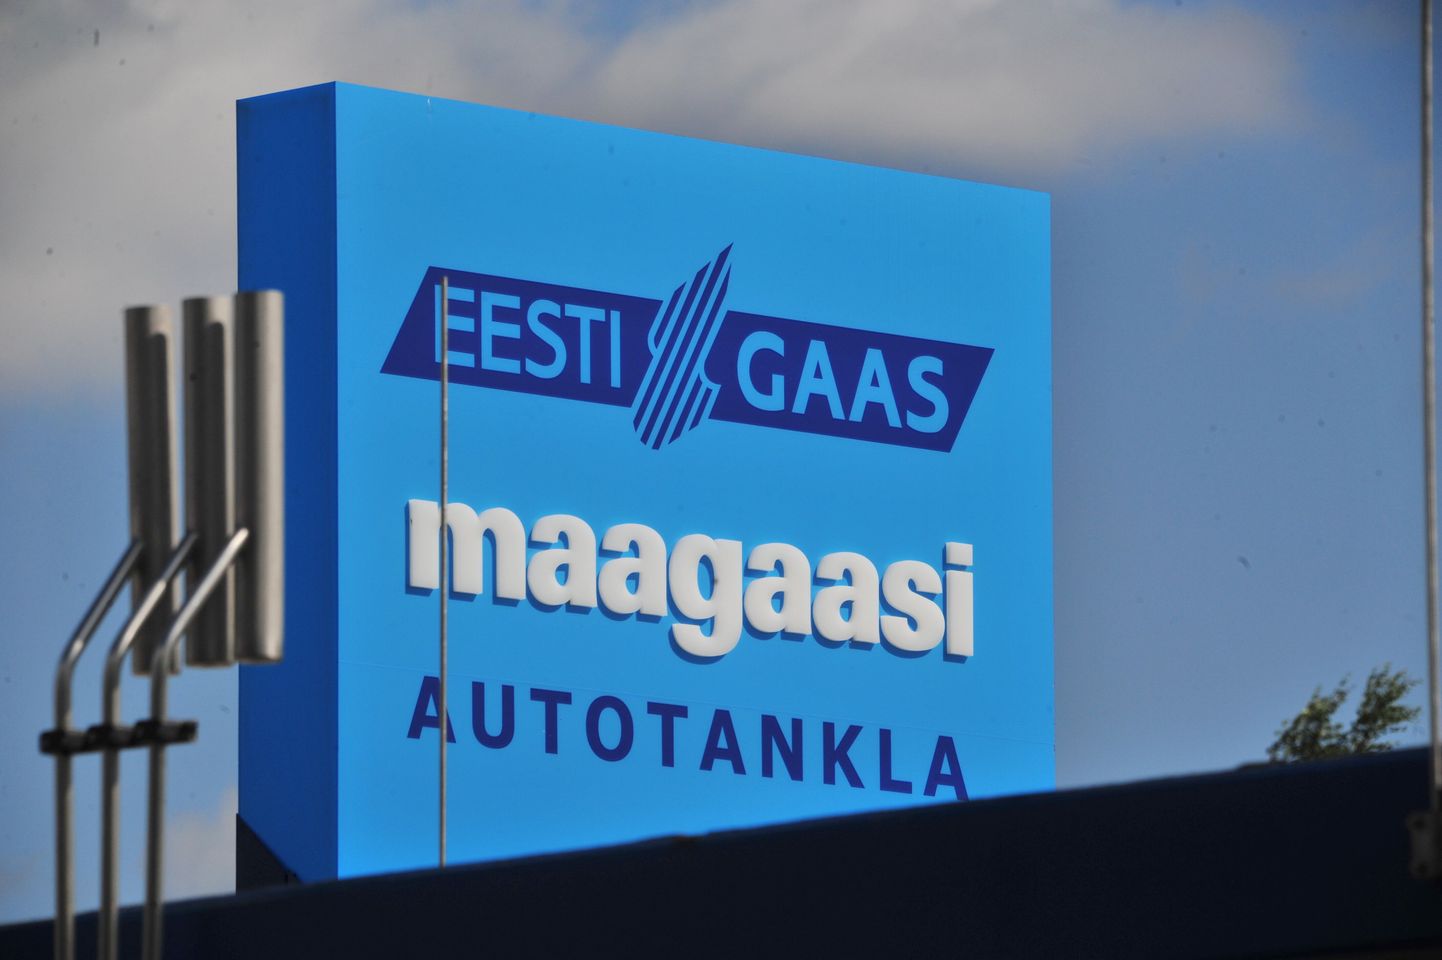 Eestis võiks gaasi hind viiendiku võrra odavam olla.
Eesti Gaasi Tartus Tähe tänaval asuv olev maagaasi autotankla.